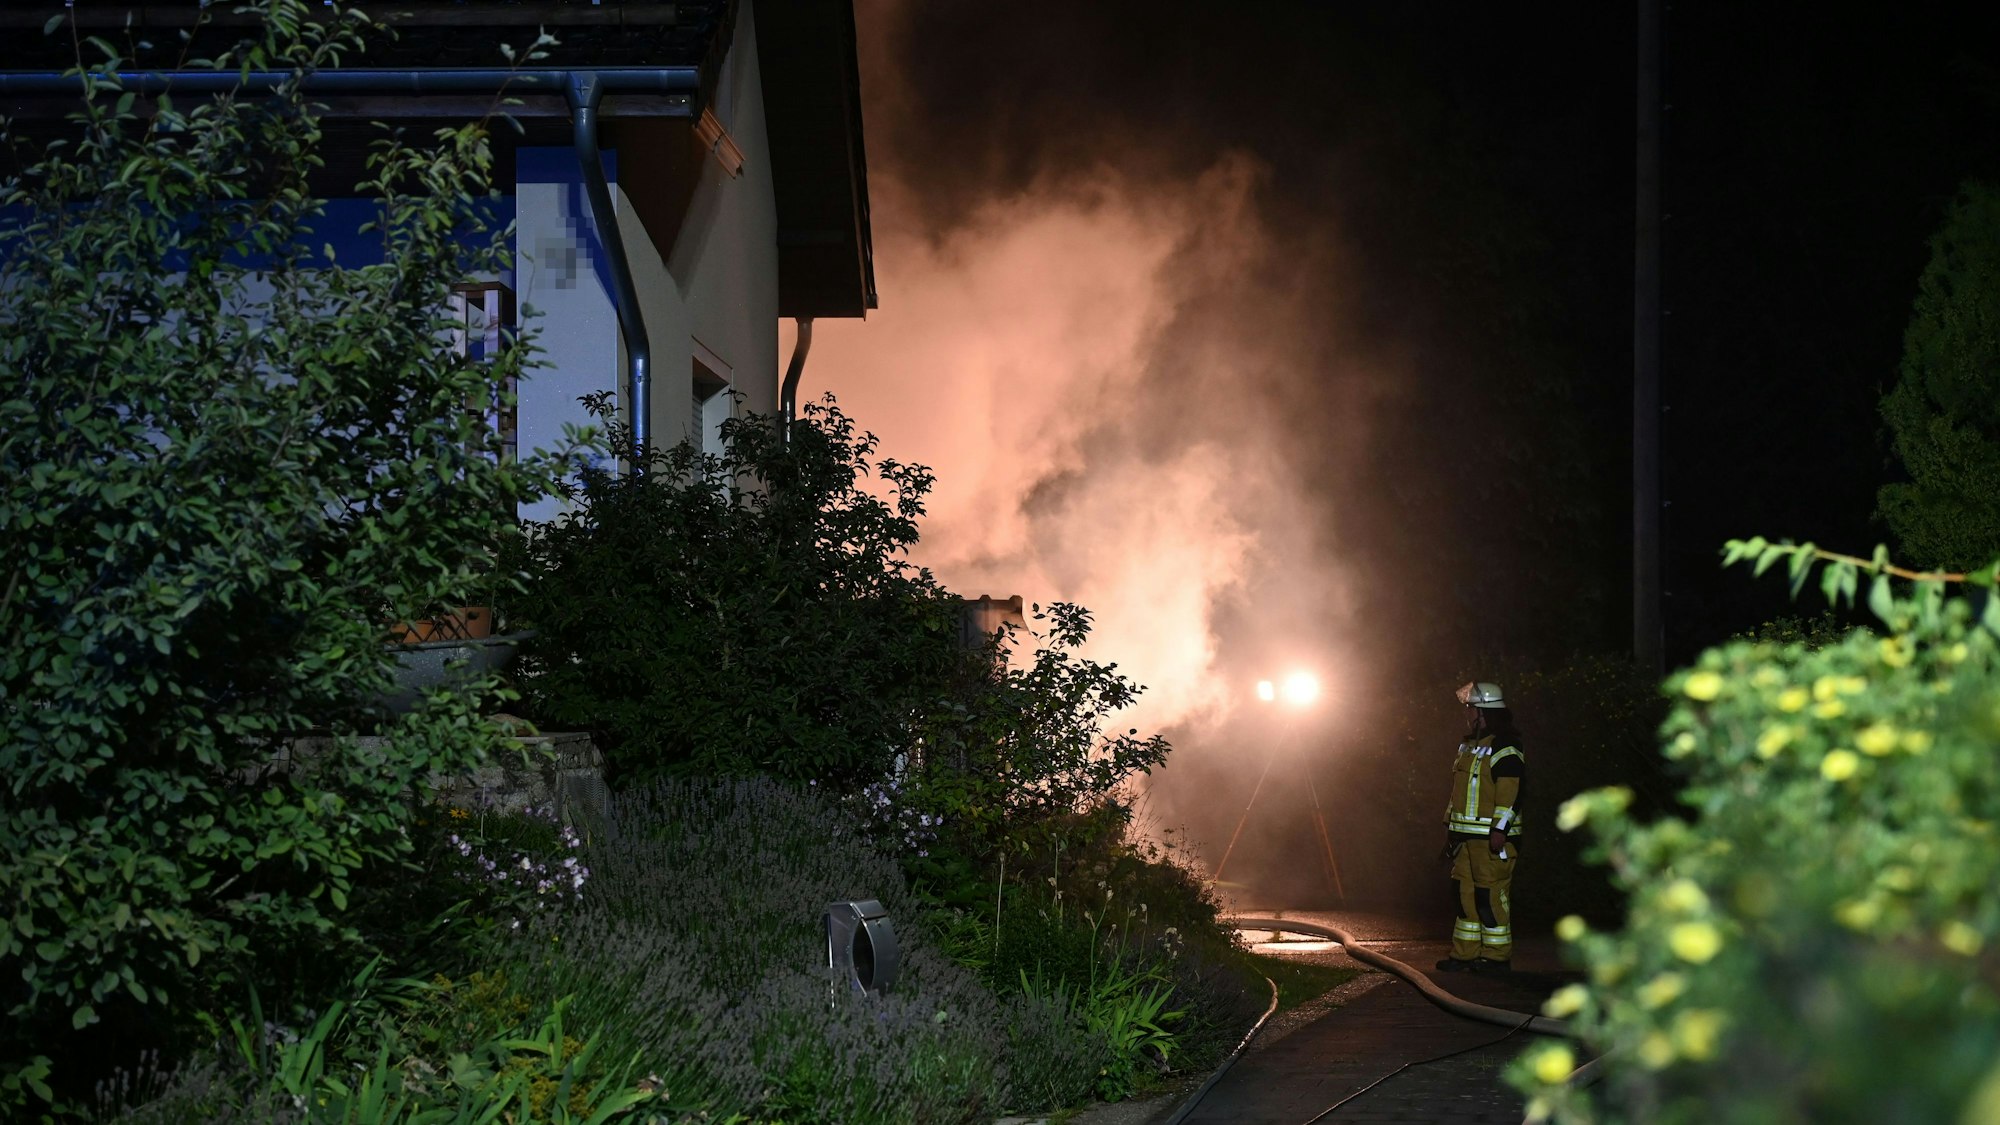 Das Bild zeigt einen Teil eines Wohnhauses, dahinter steigt Rauch auf, ein Feuerwehrmann betrachtet die Szenerie.